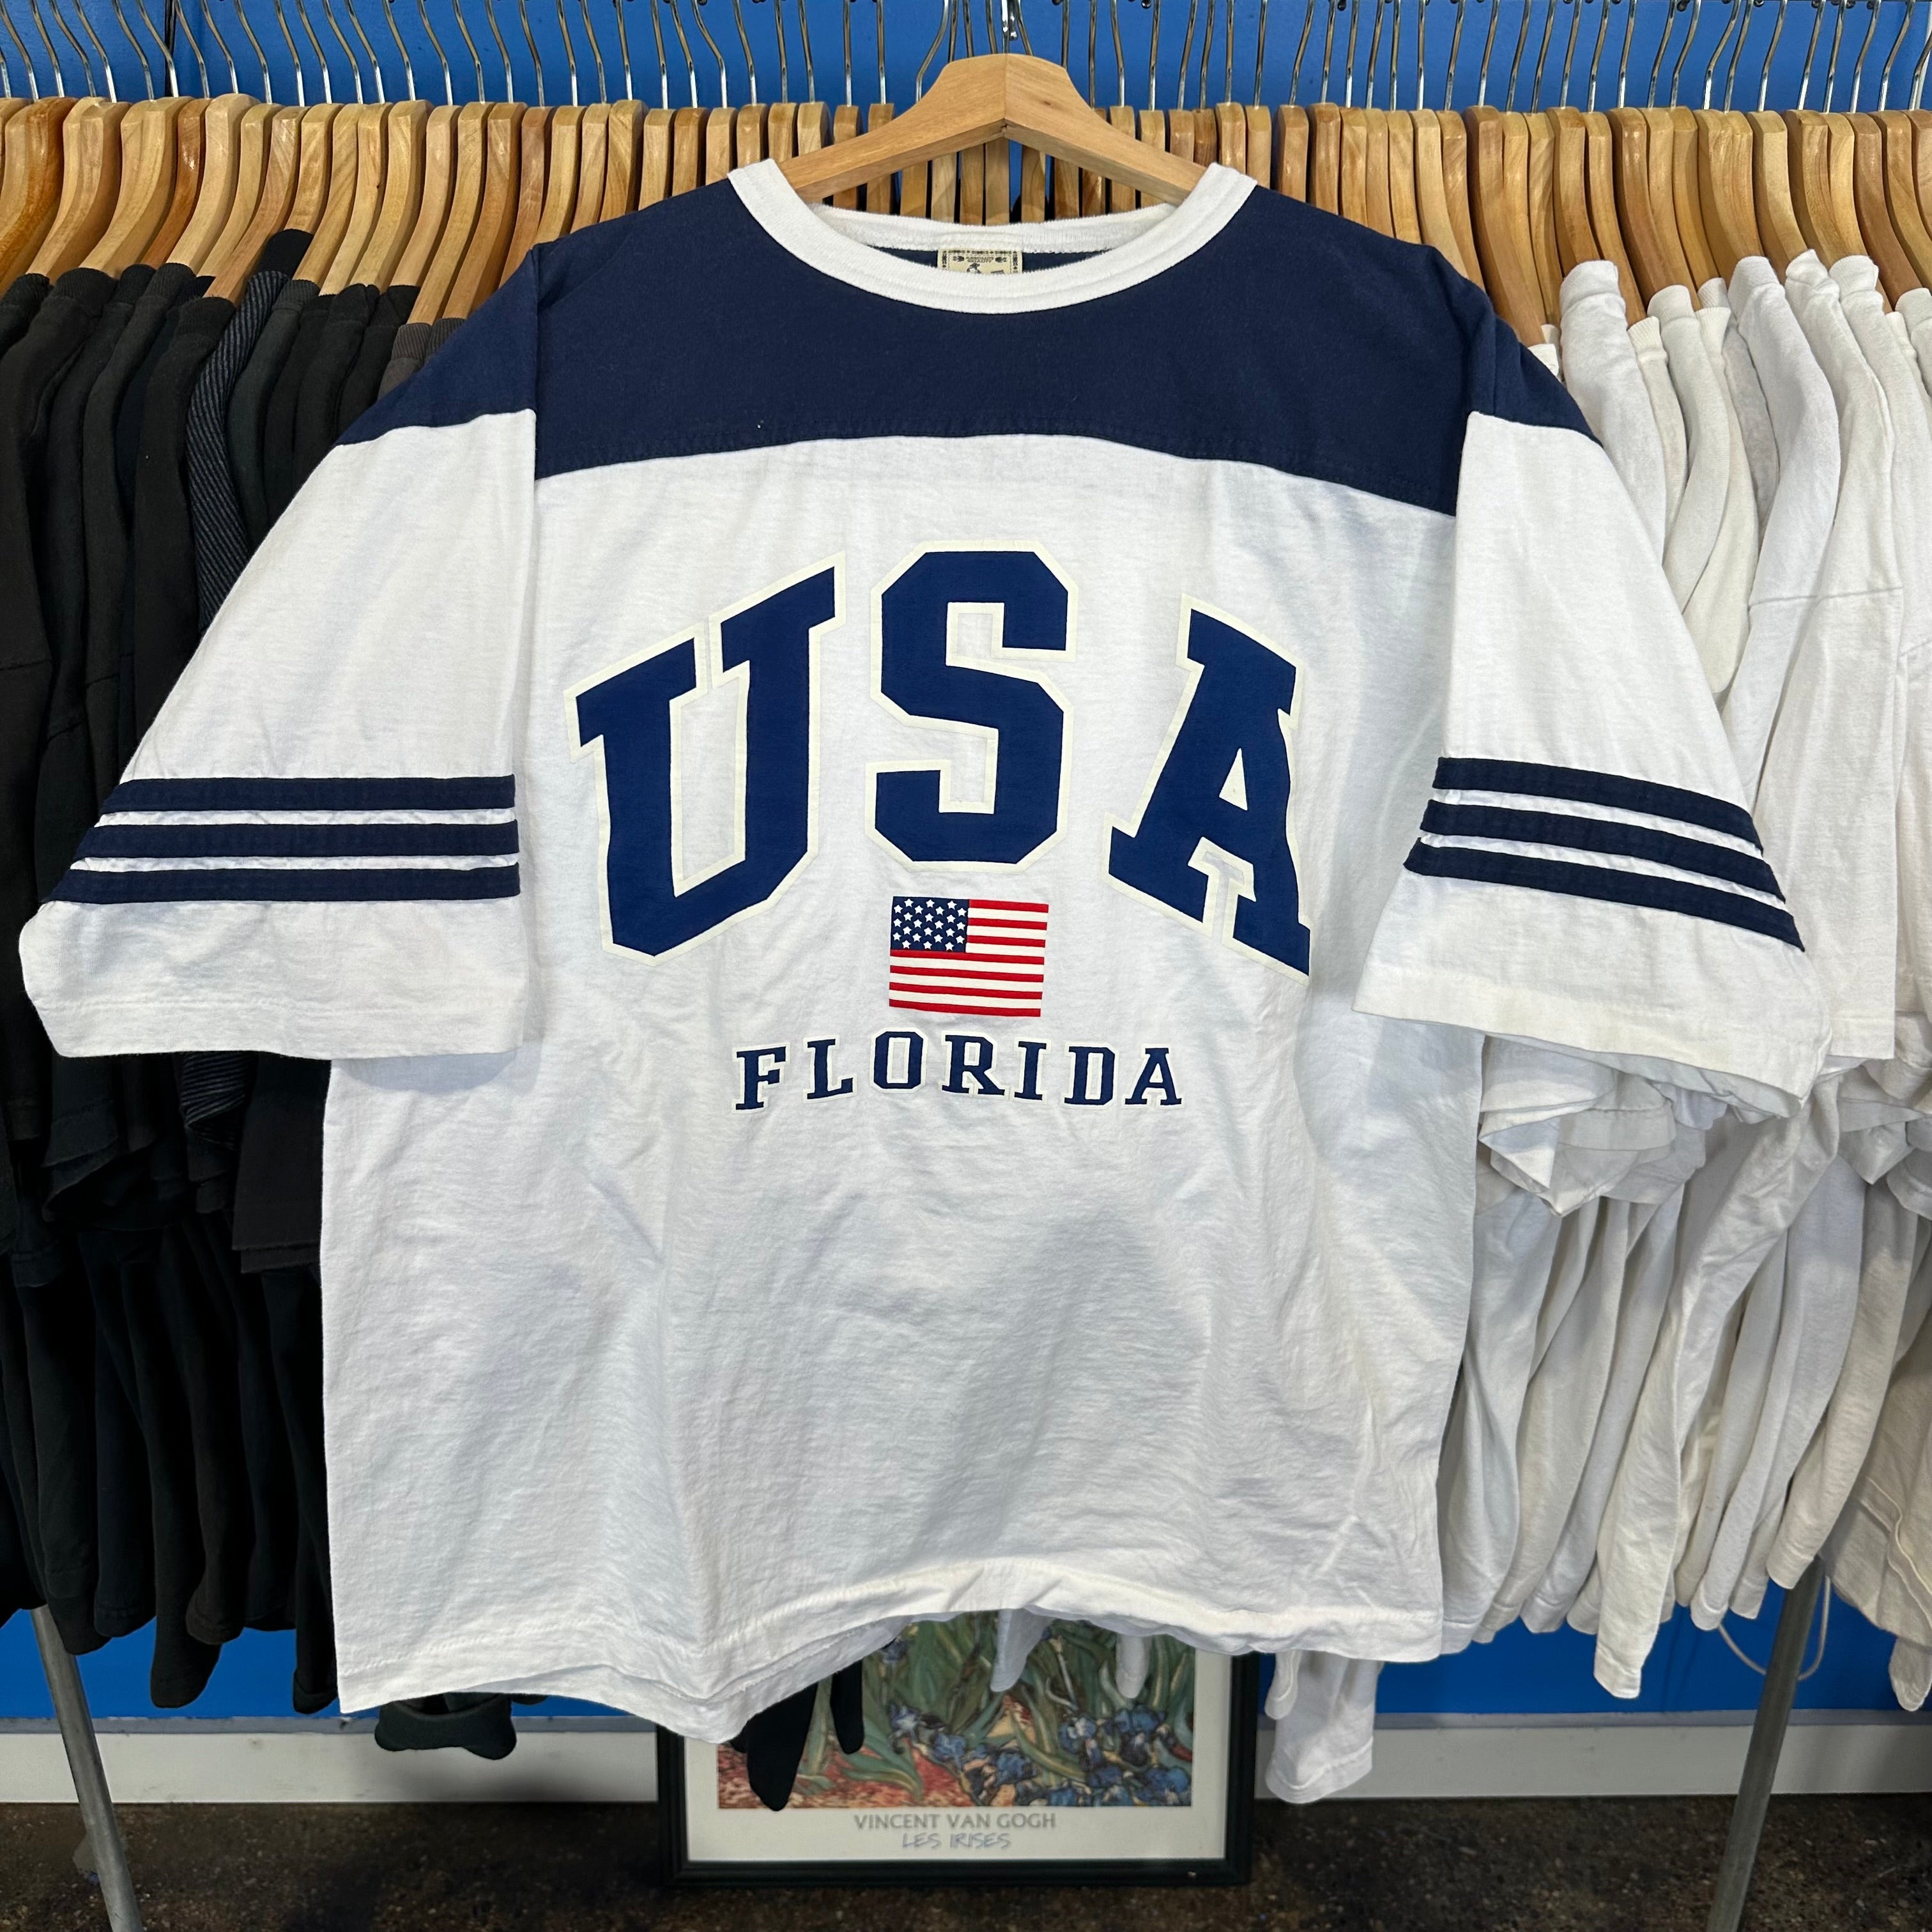 USA Florida Jersey Style T-Shirt